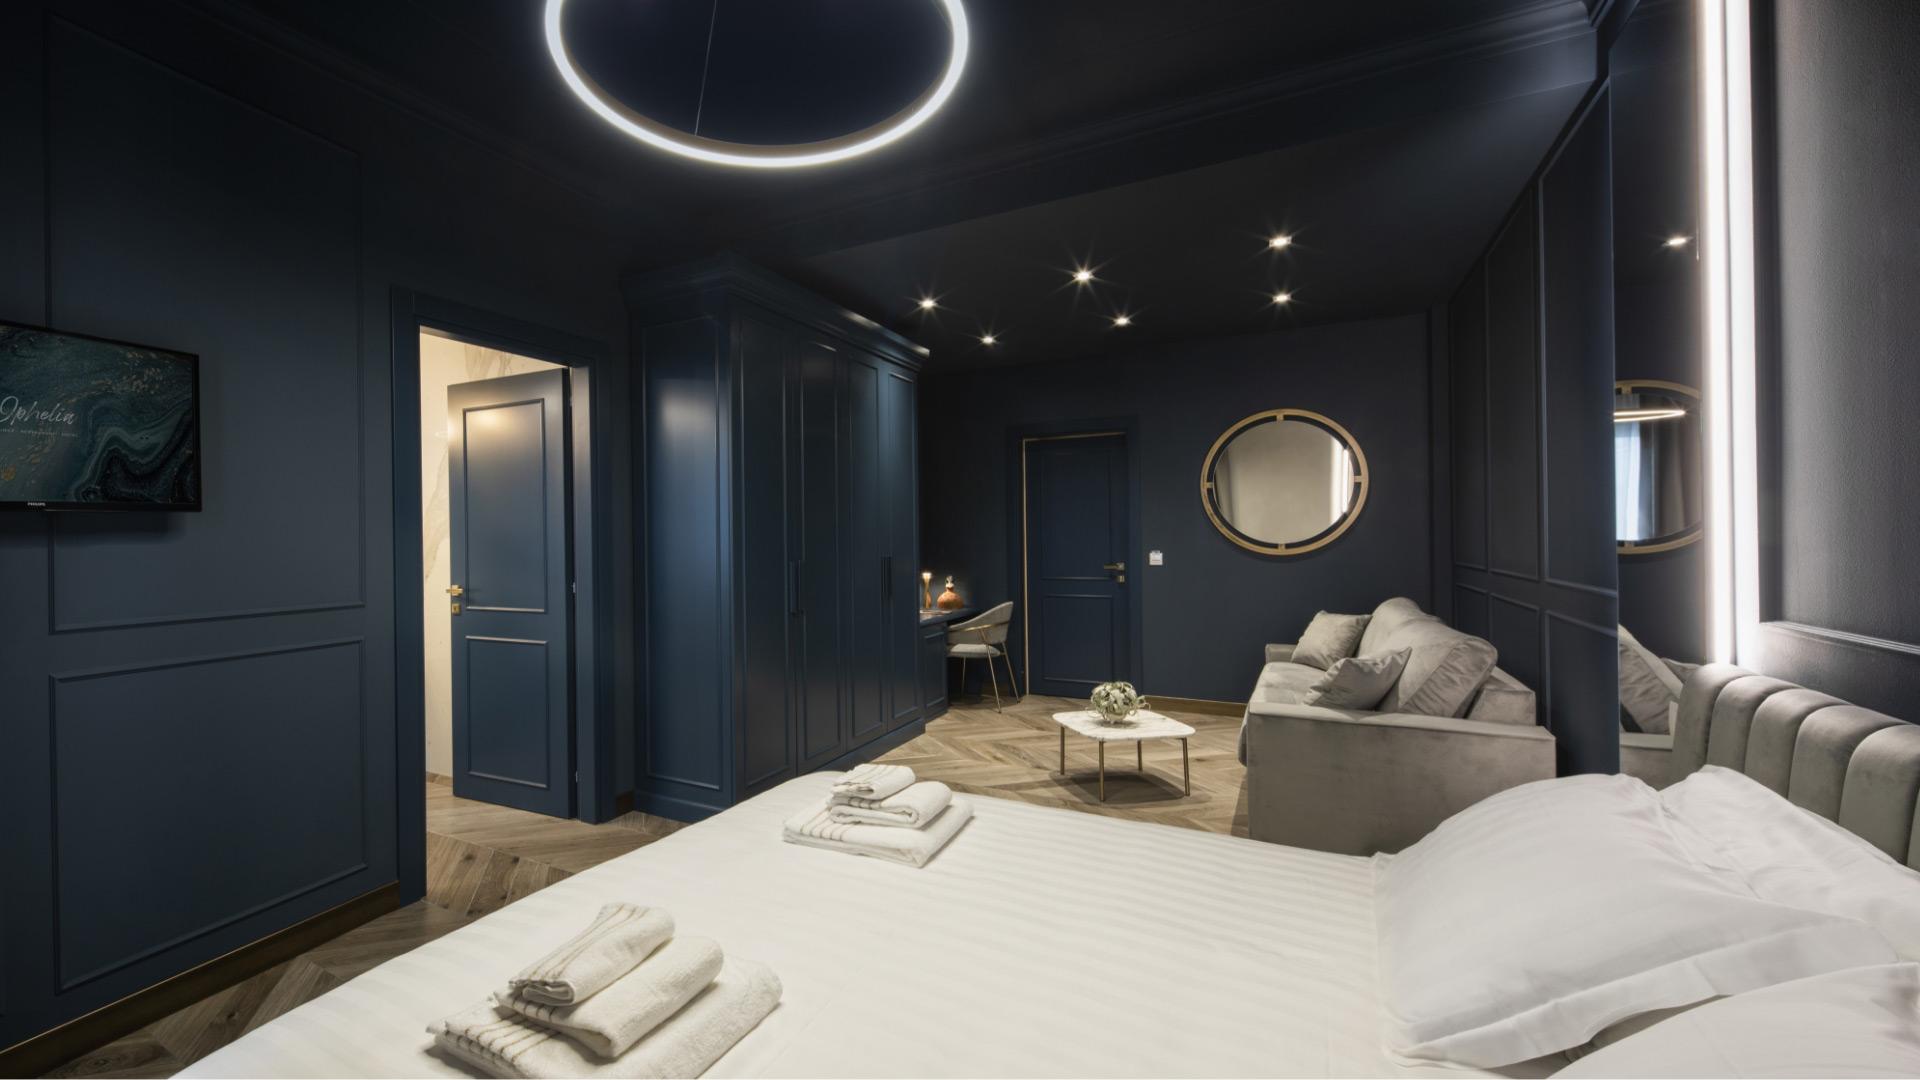 Camera moderna con pareti blu, letto, divano e illuminazione elegante.